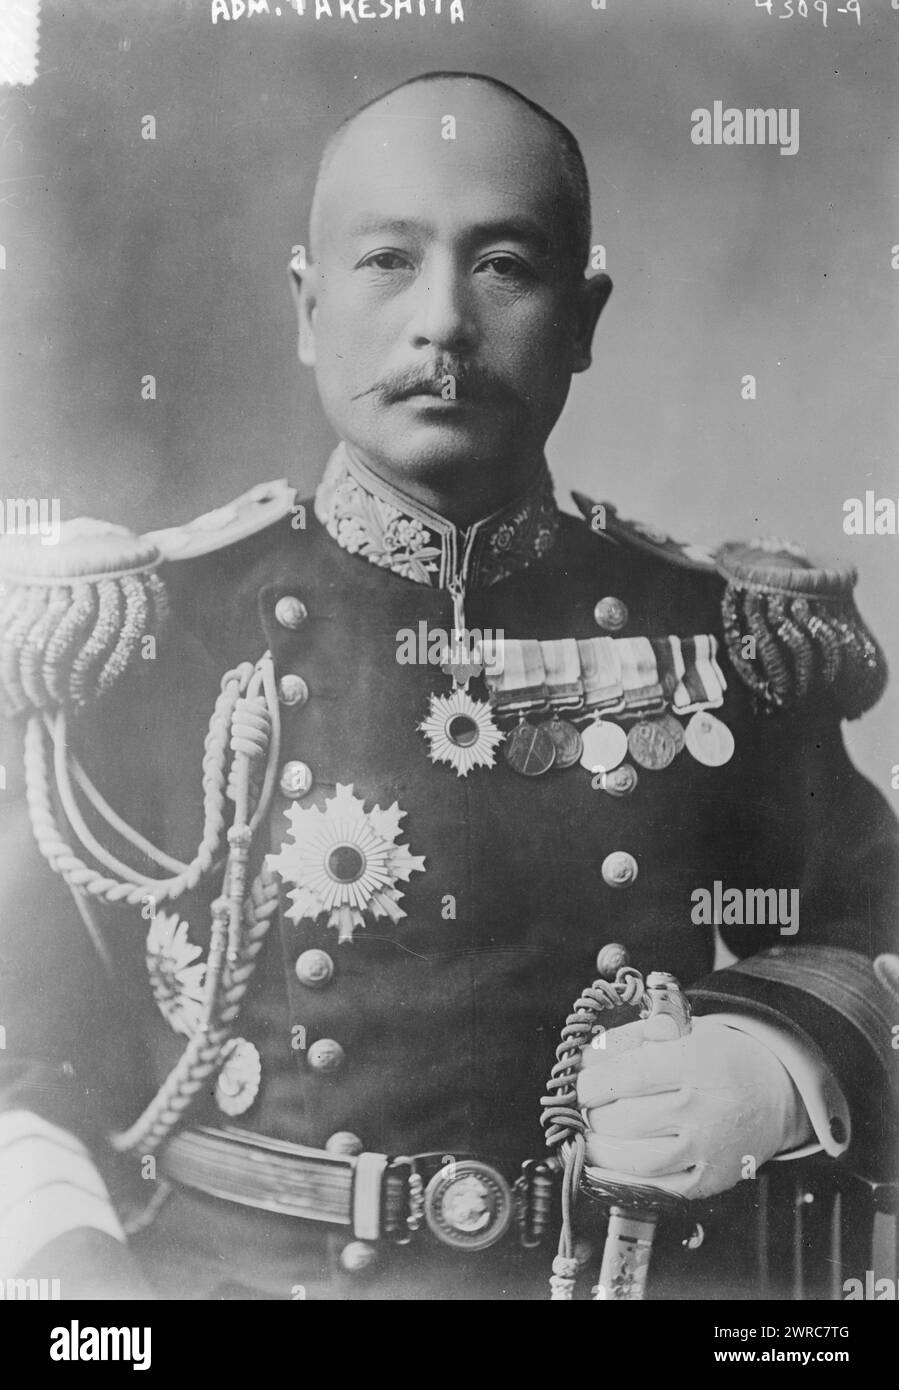 ADM. Takeshita, Foto zeigt den japanischen Admiral und Diplomaten Isamu Takeshita (1869–1949), der 1917 Mitglied der japanischen diplomatischen Mission in den Vereinigten Staaten war., 1917., Glasnegative, 1 negativ: Glas Stockfoto